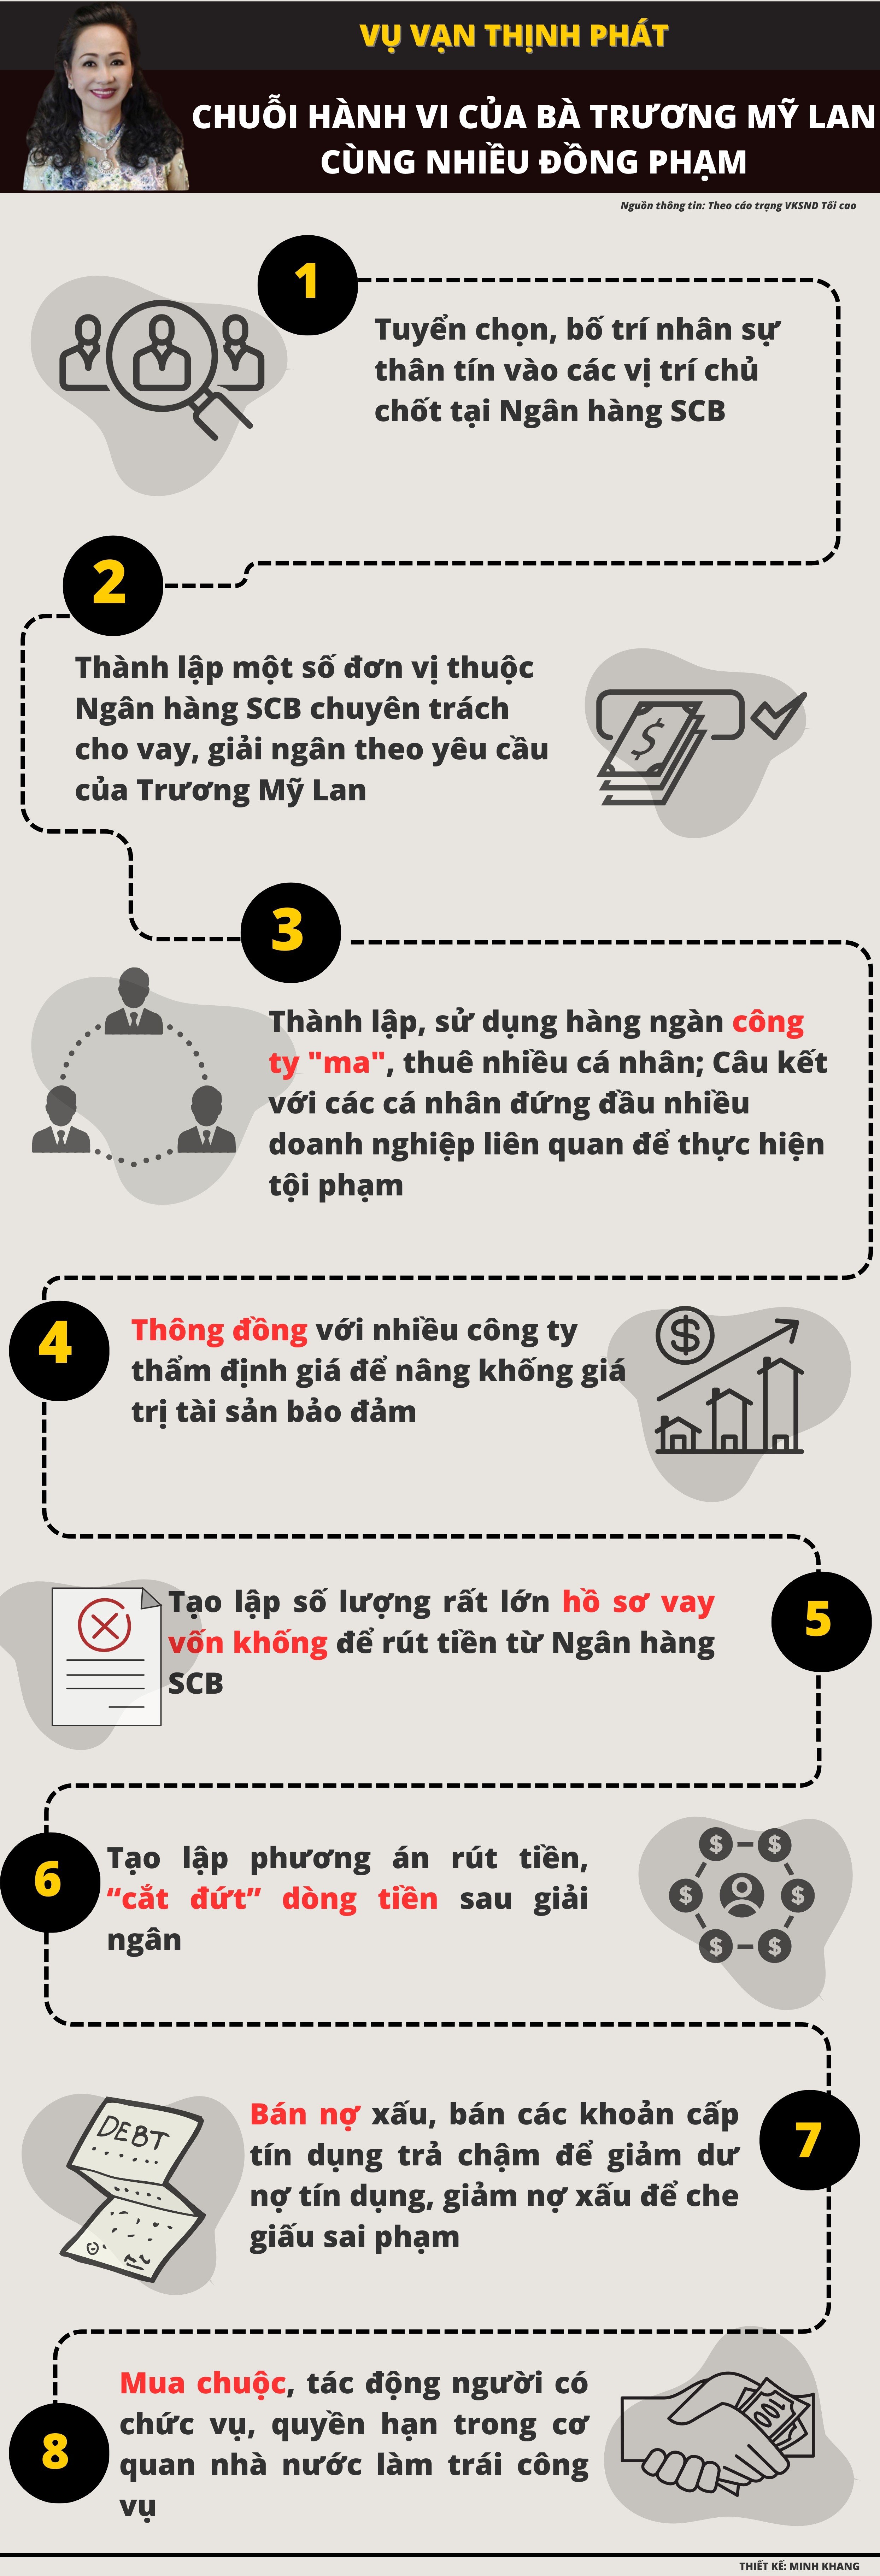 Infographic: Chuỗi hành vi của bà Trương Mỹ Lan và đồng phạm thực hiện để chiếm đoạt tiền - 1